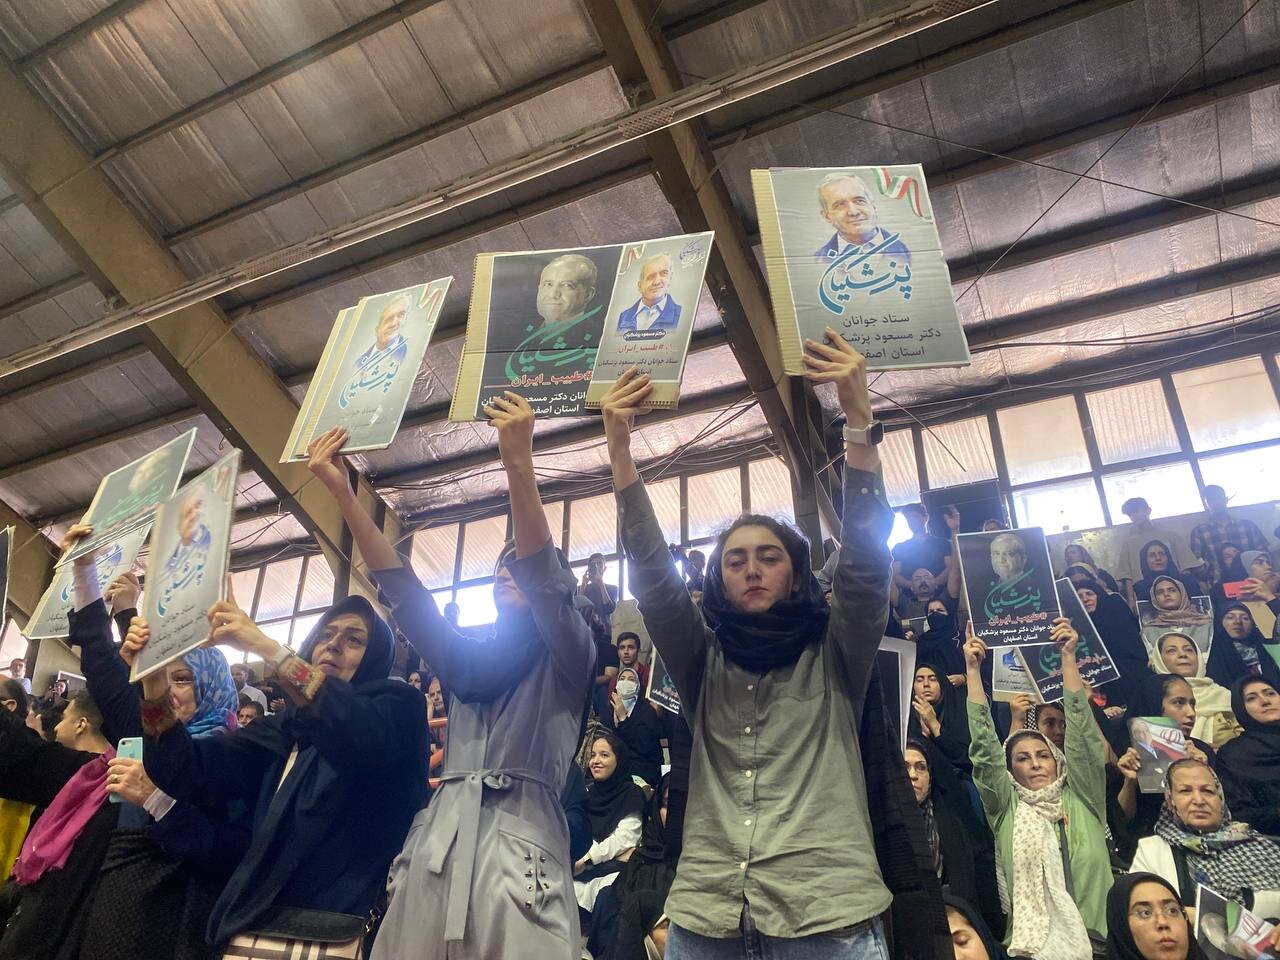 تصاویری از شهید رئیسی و امیرعبداللهیان در میتینگ انتخاباتی مسعود پزشکیان در اصفهان /دختران و زنان آمدند